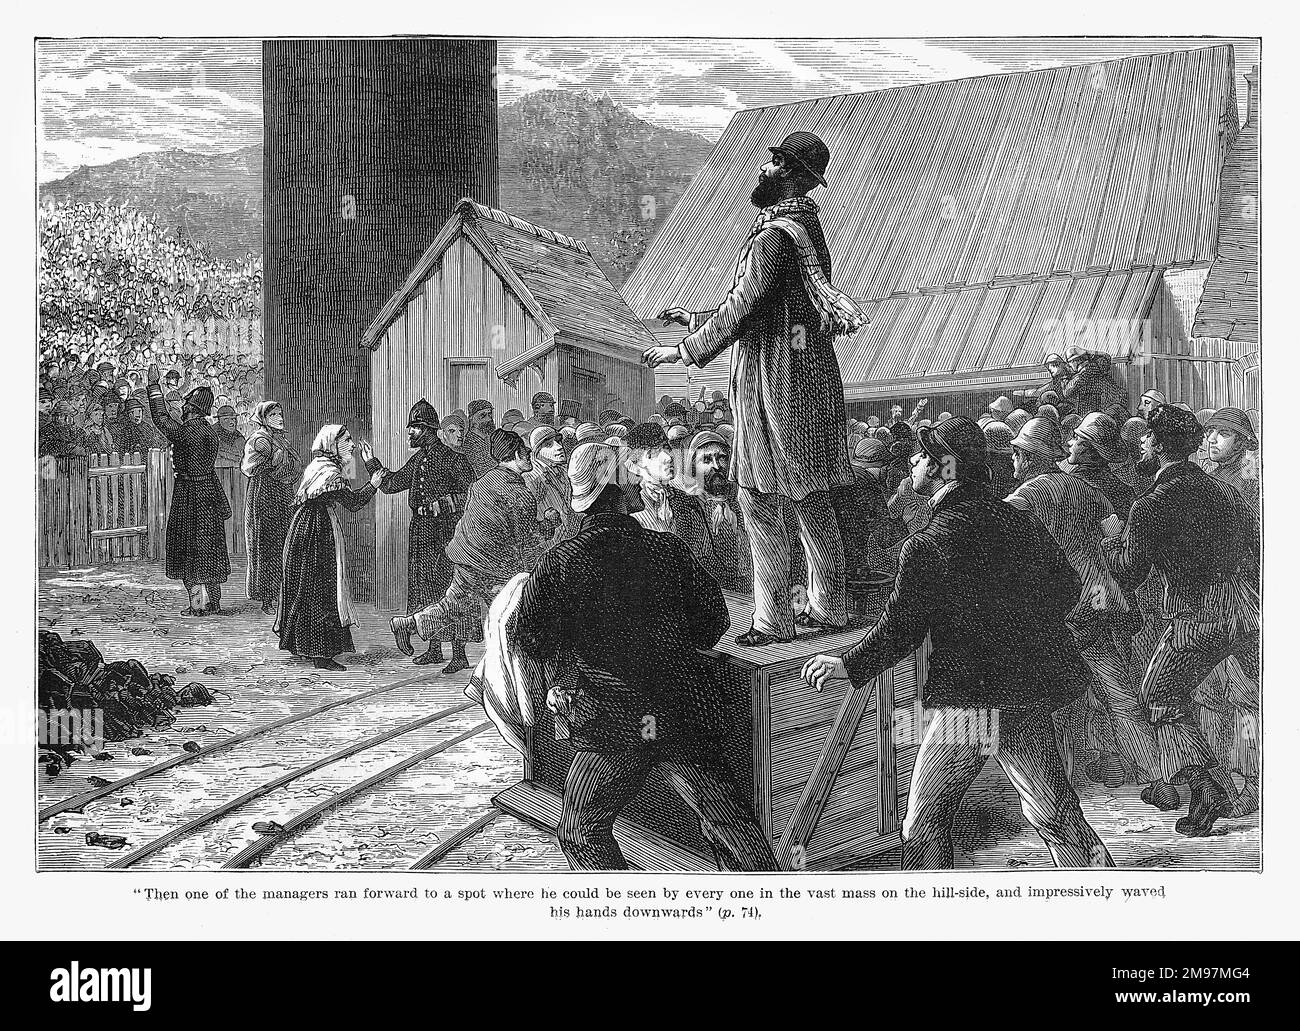 Tynewydd-Colliery-Katastrophe, bei Pontypridd, Wales. Am Nachmittag des 11. April 1877 wurde die Mine unerwartet überflutet. Während der Rettungsaktion steht einer der Manager auf einer Holzkiste, um mit Menschenmengen zu sprechen, die sich am Hang versammelt haben. Stockfoto